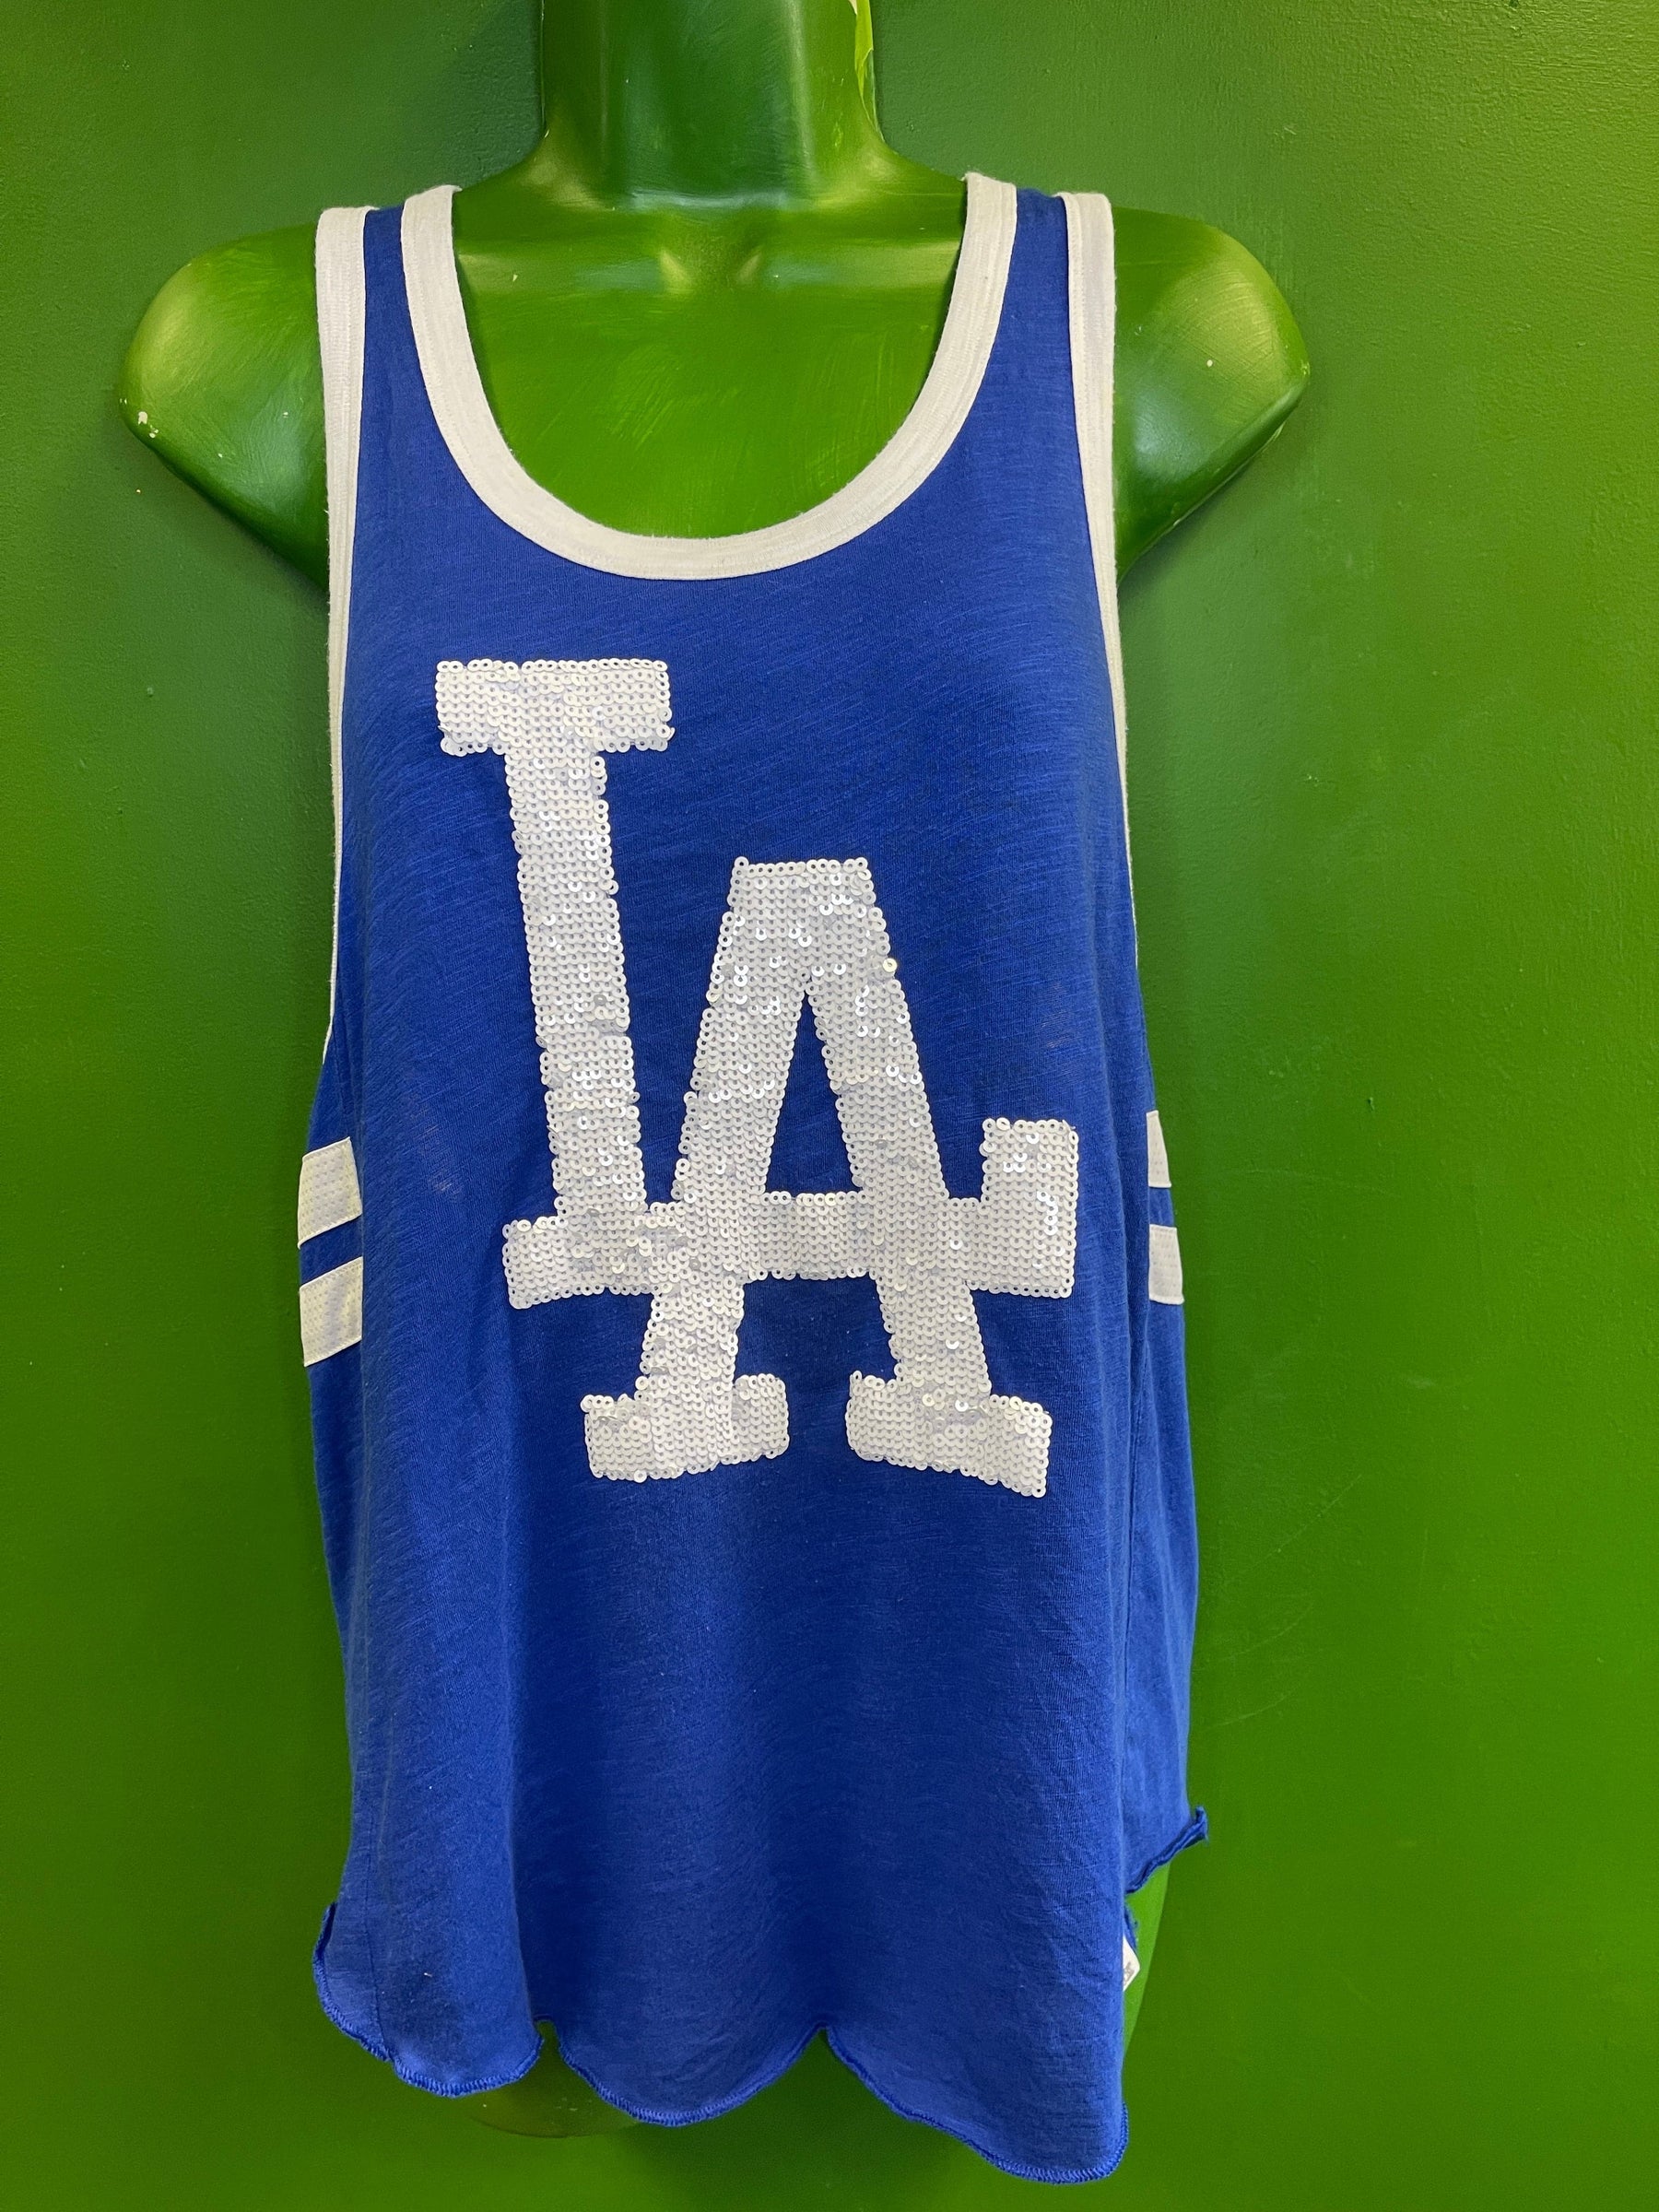 Victoria's Secret Pink Los Angeles Dodgers baseball jersey tee sequin